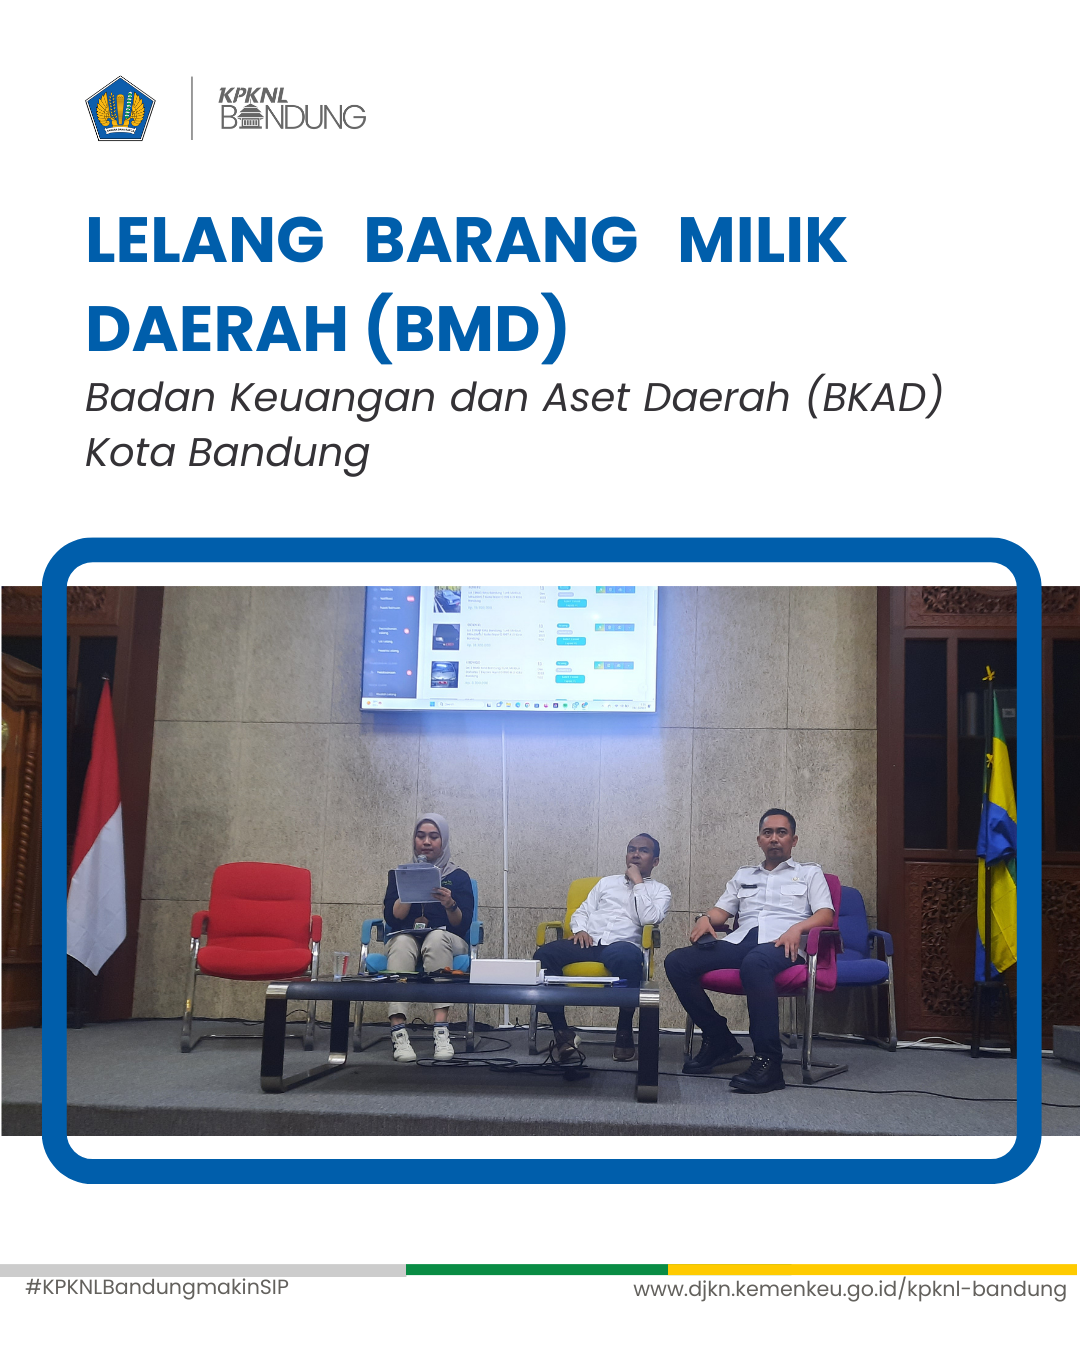 Lelang e-conventional BMD BKAD Kota Bandung